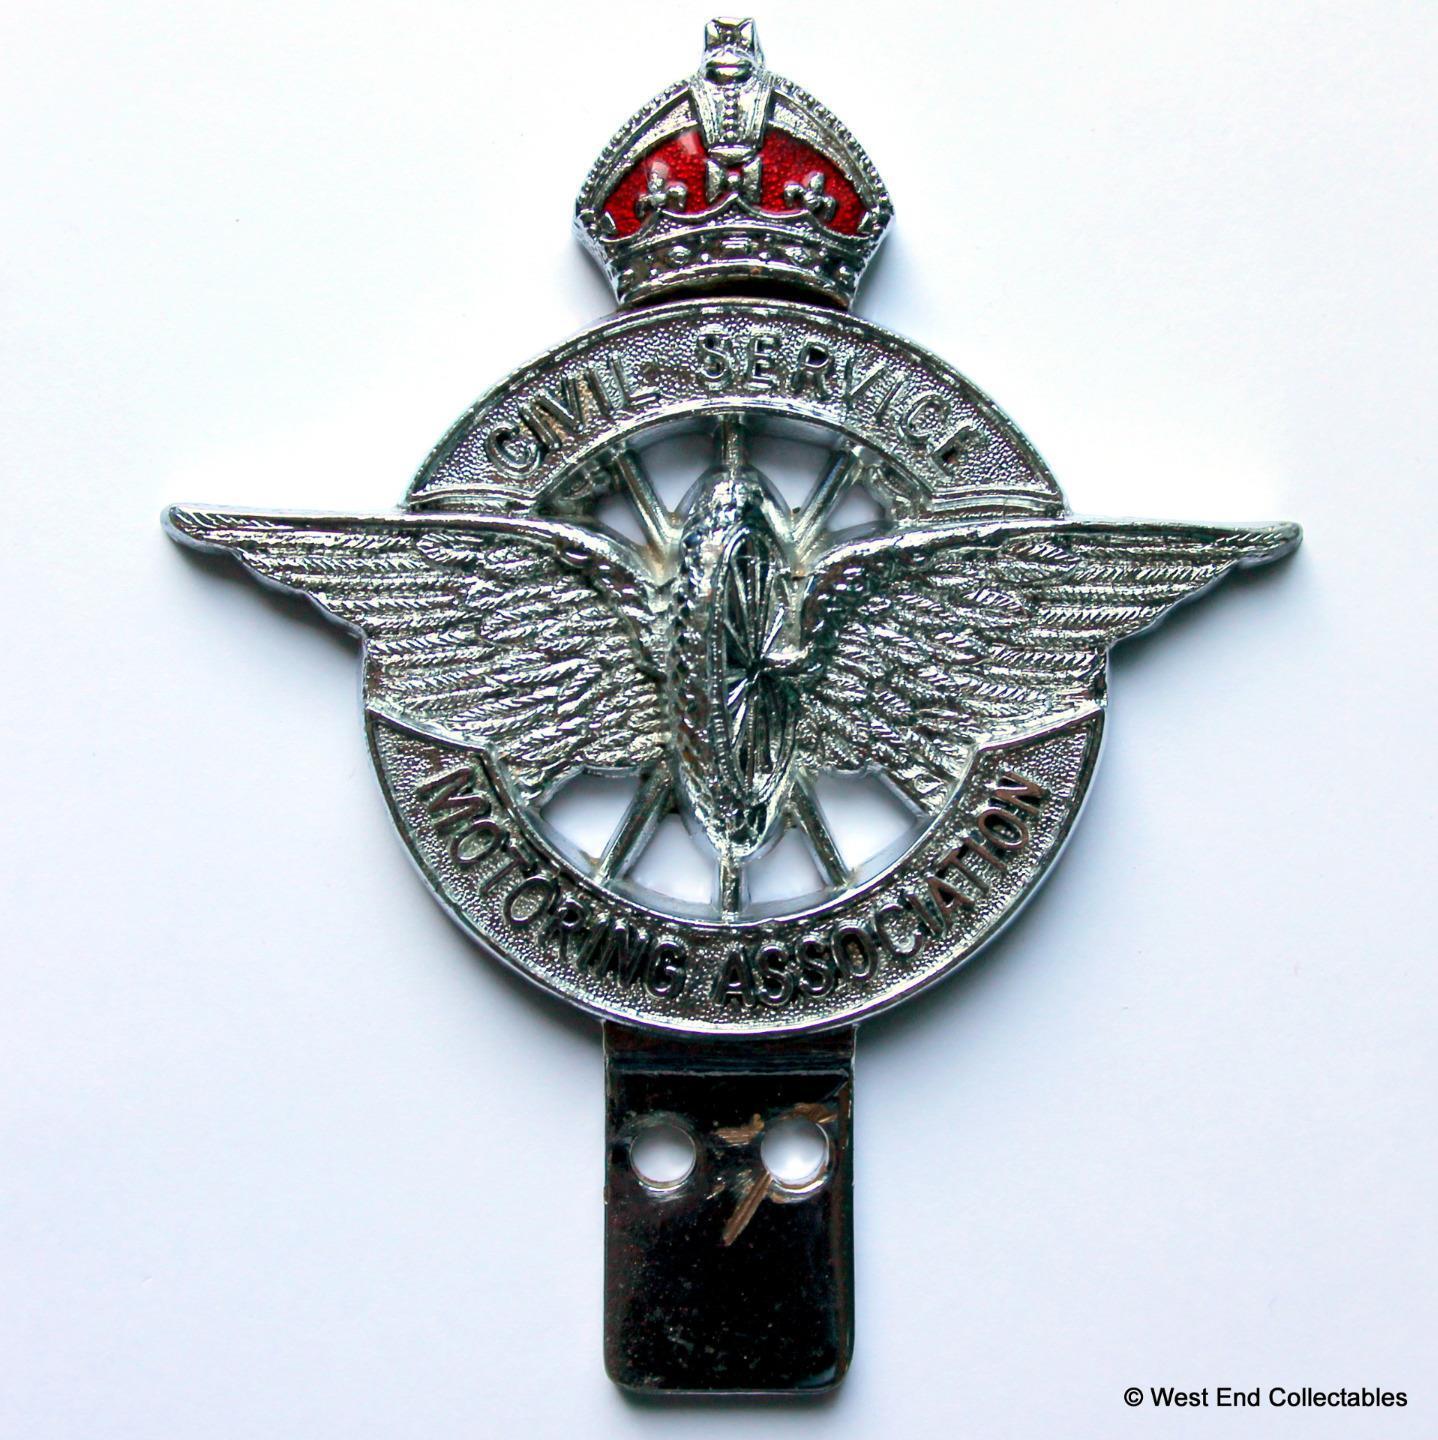 Vintage 1930s COLLINS Car Badge - Civil Service Motoring Association CSMA - KC